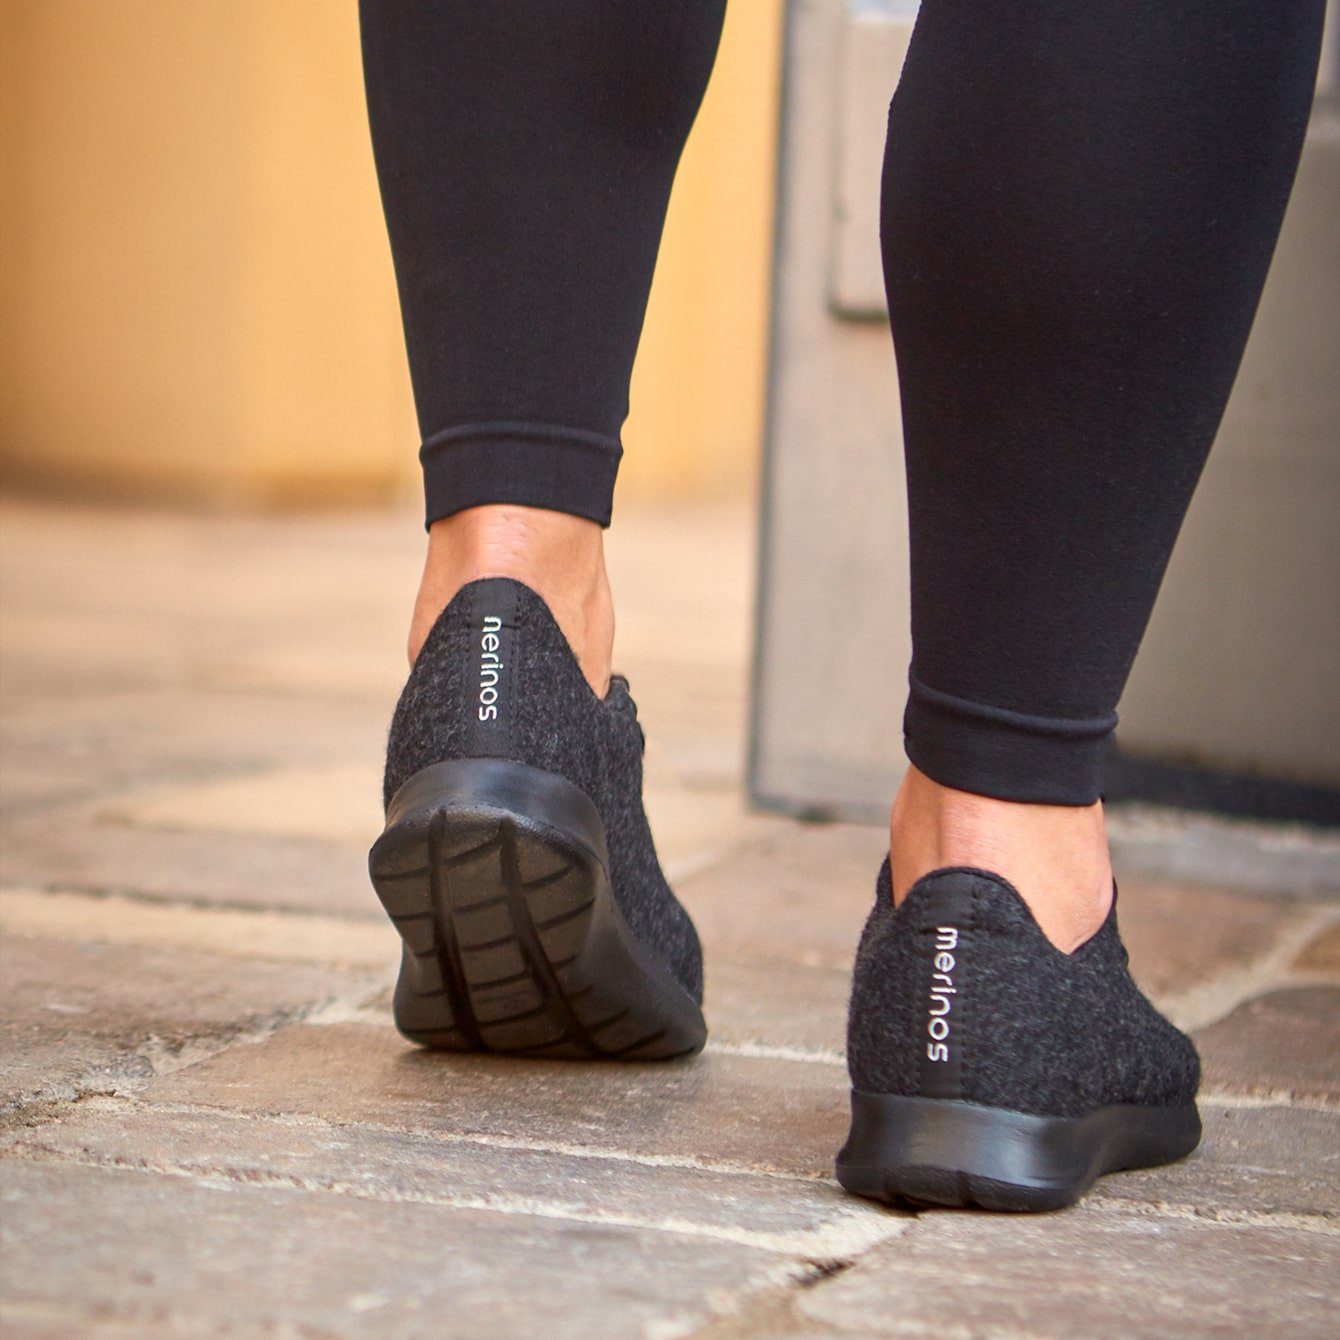 Sportschuhe aus atmungsaktive merinos Up, Damen Schuhe Bequeme Lace- Merinowolle merinoshoes.de Sneaker schwarze - weicher